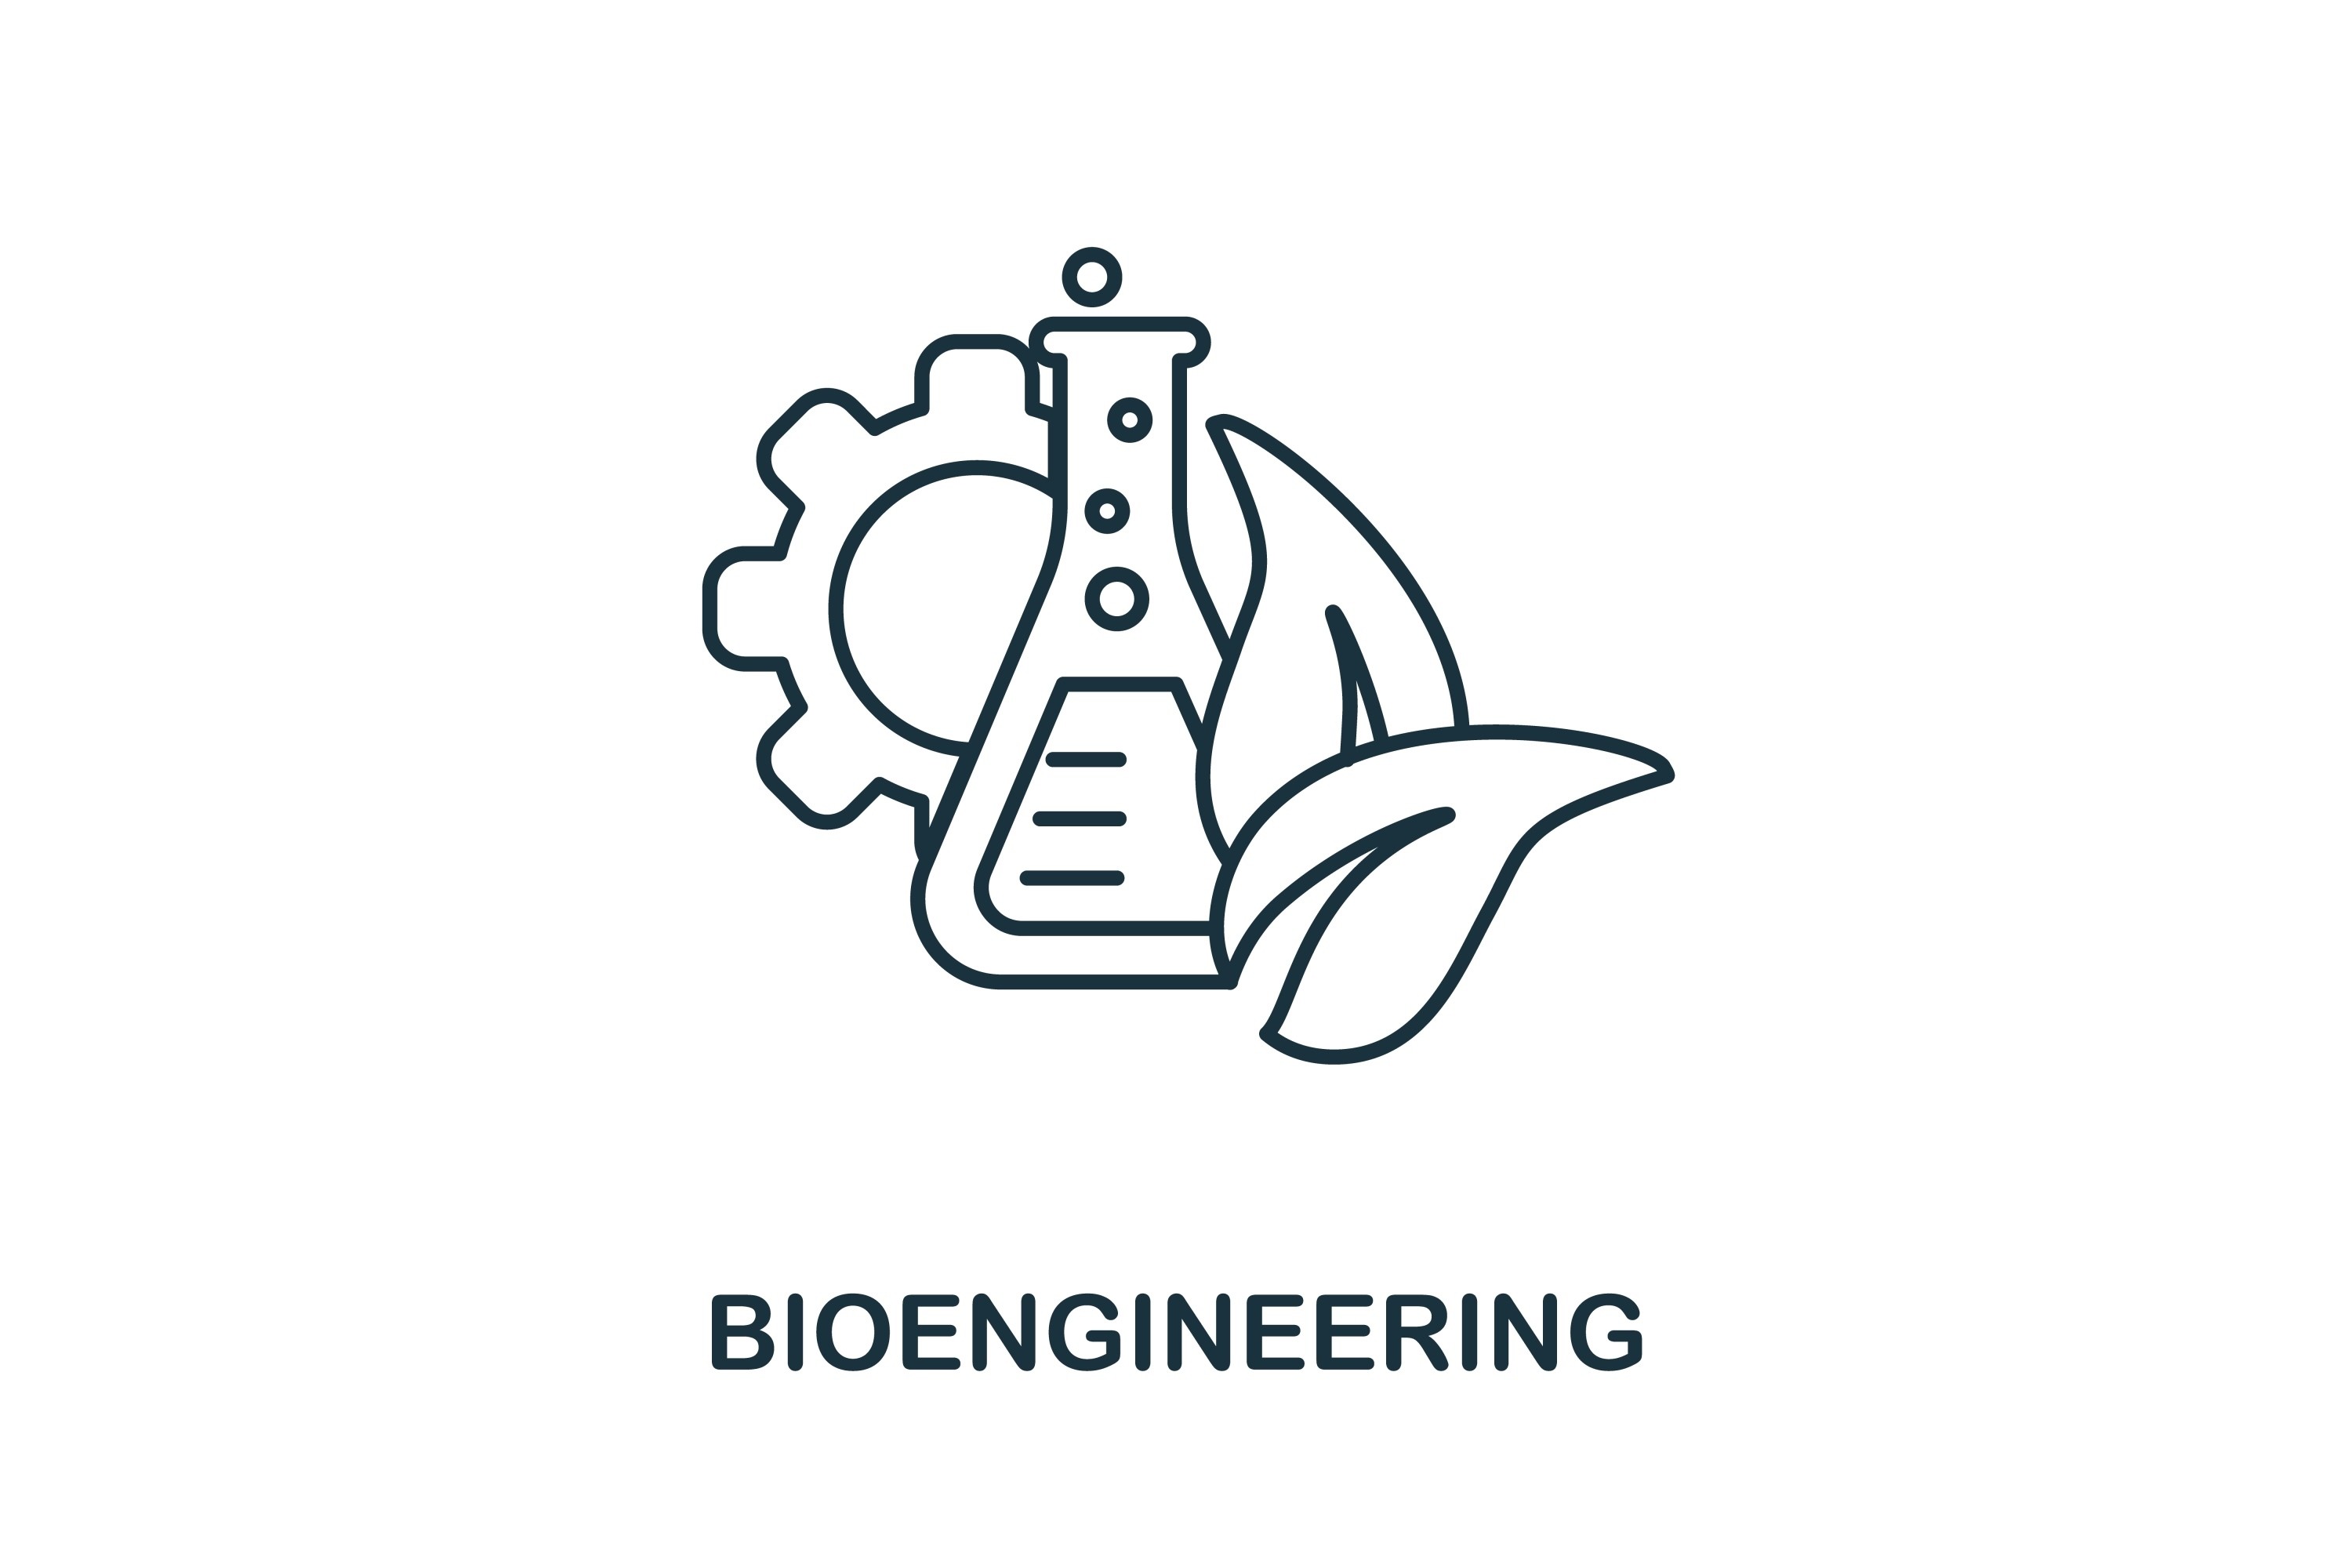 Bioengineering, Free Full-Text